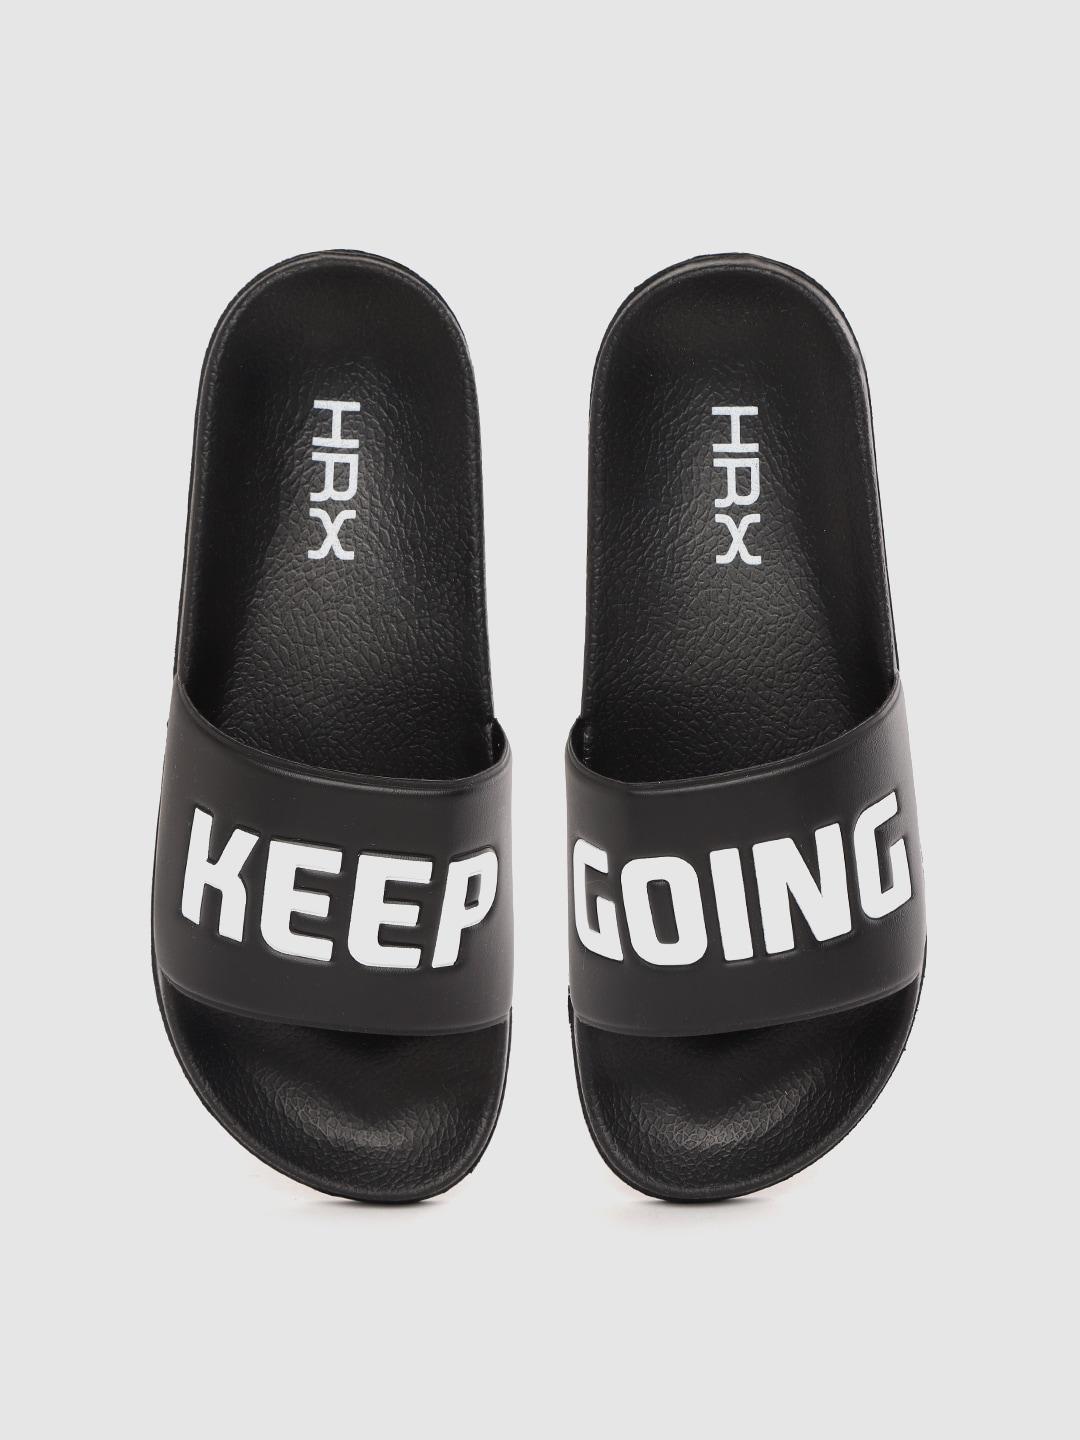 hrx-by-hrithik-roshan-men-comfort-slip-on-sandals